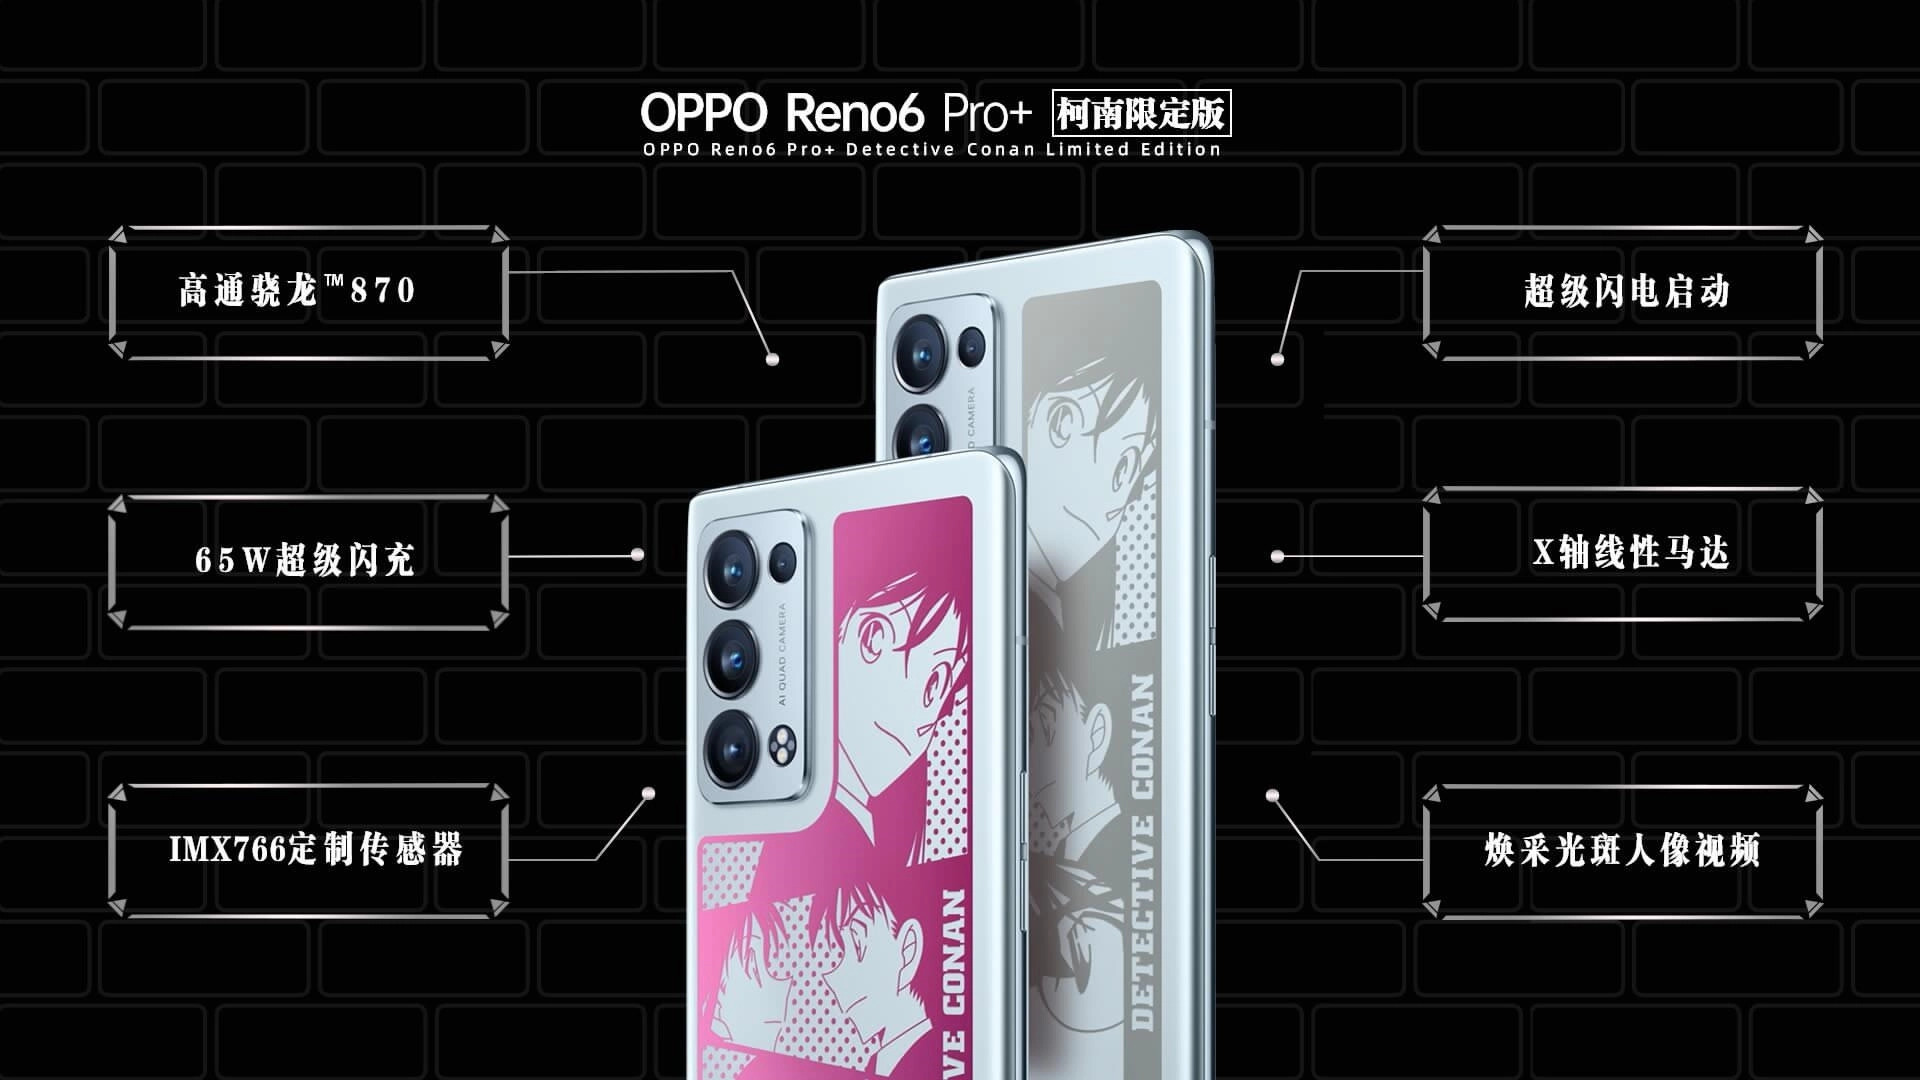 OPPO Reno6 Pro+ Conan Limited Edition Specs